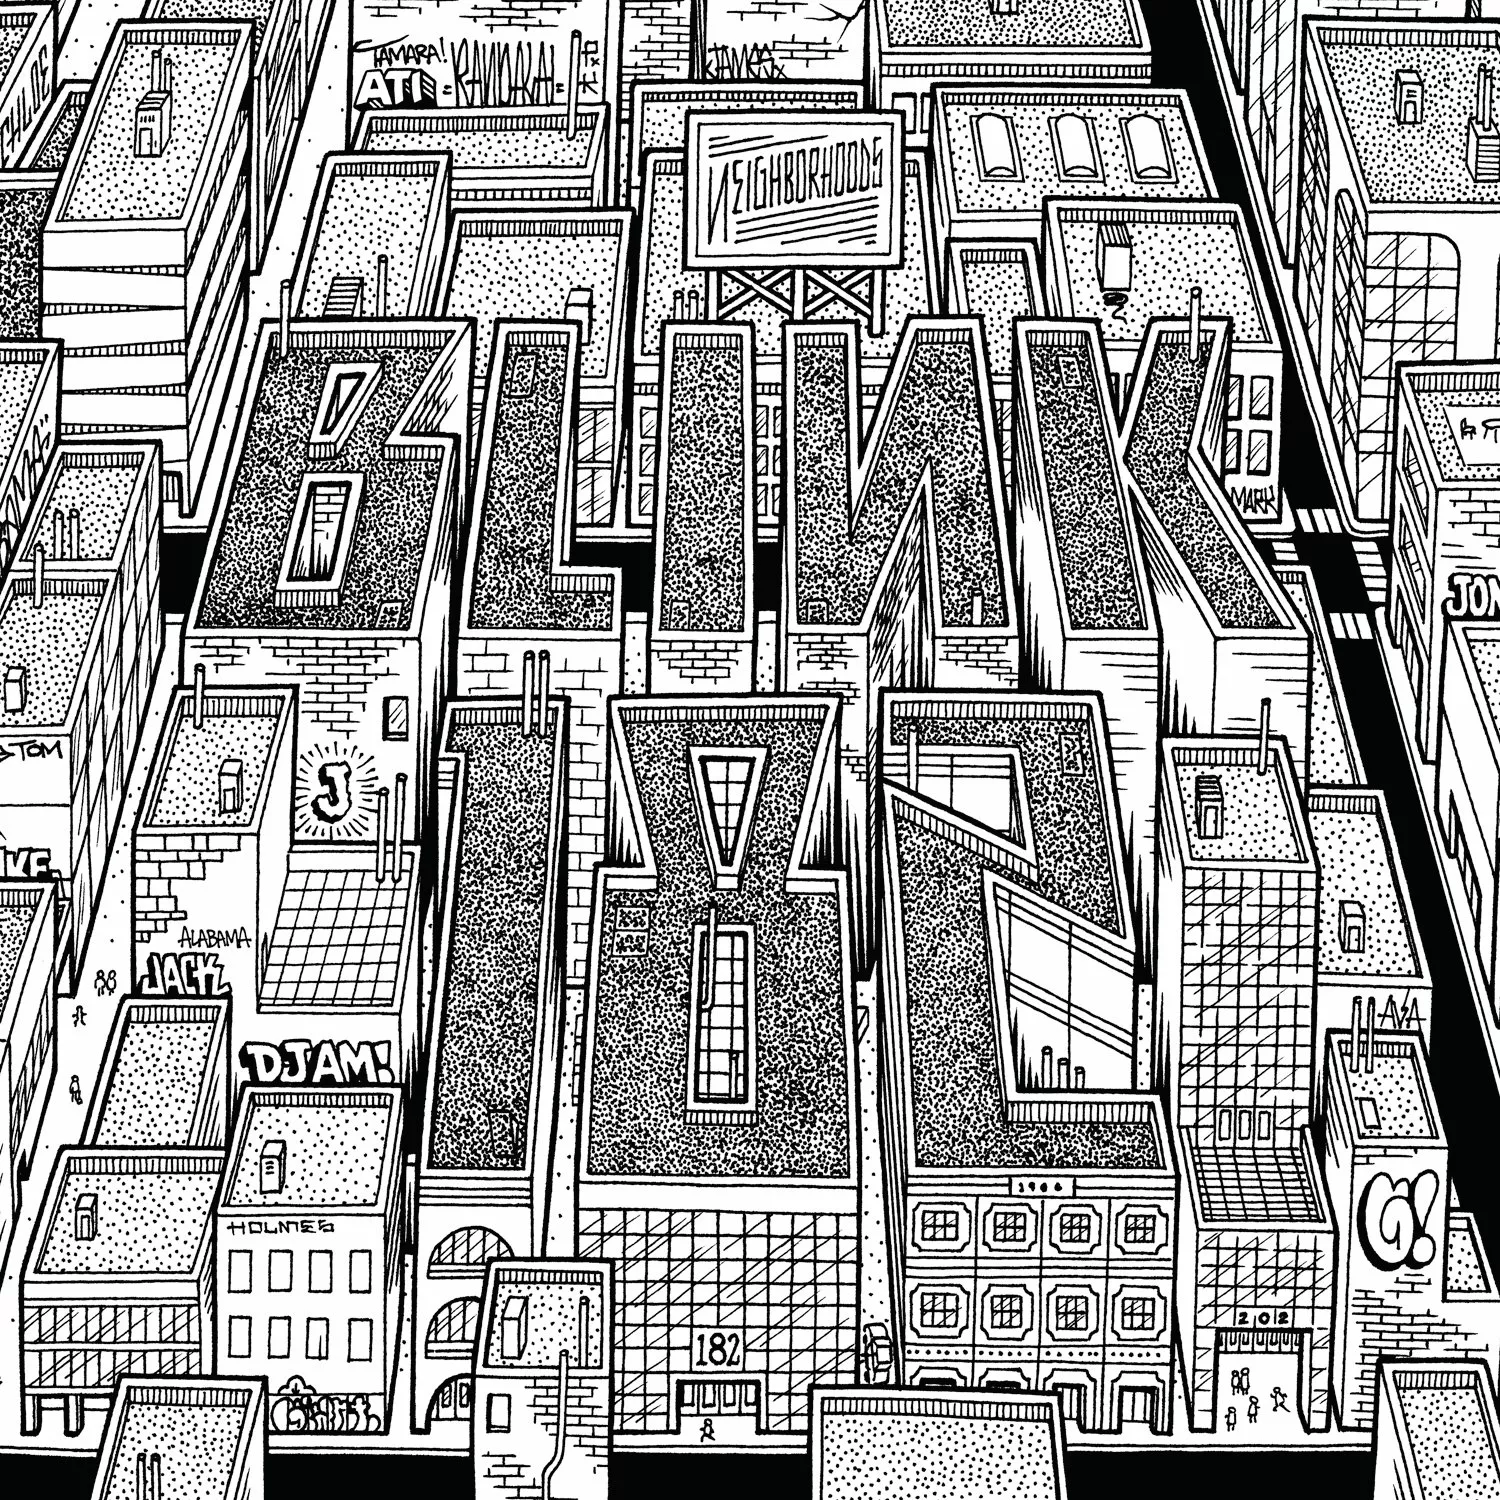 Blink-182 streamer album